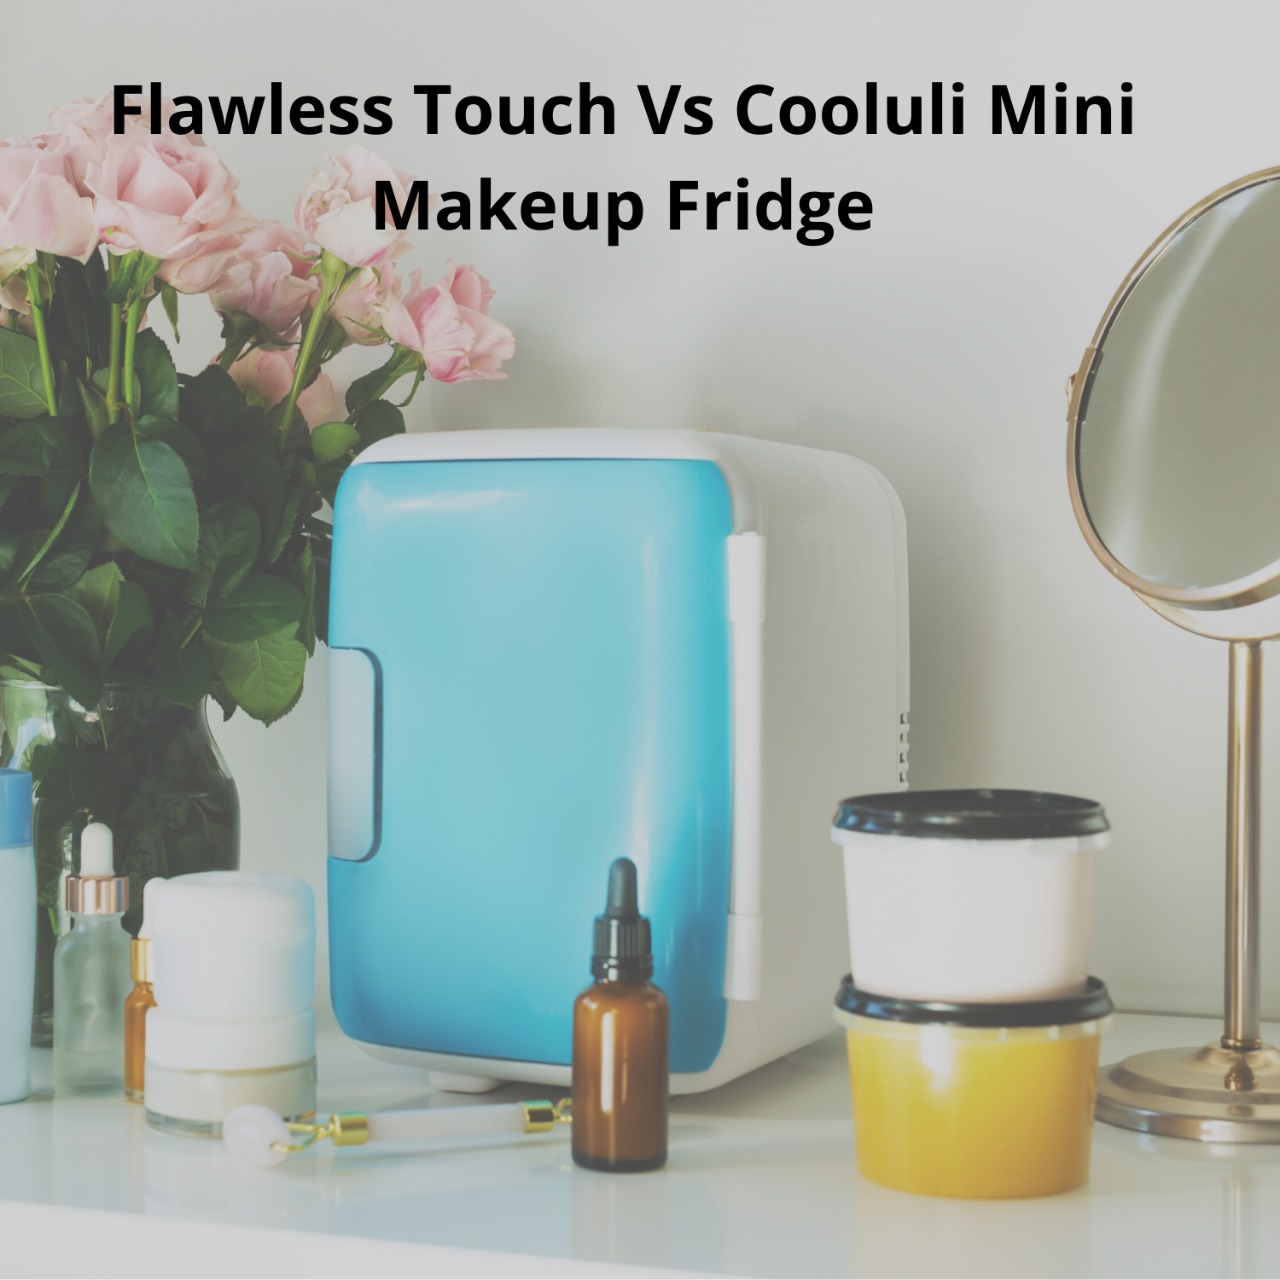 Finishing Touch flawless Mini Fridge Vs. Cooluli Mini Makeup Fridge